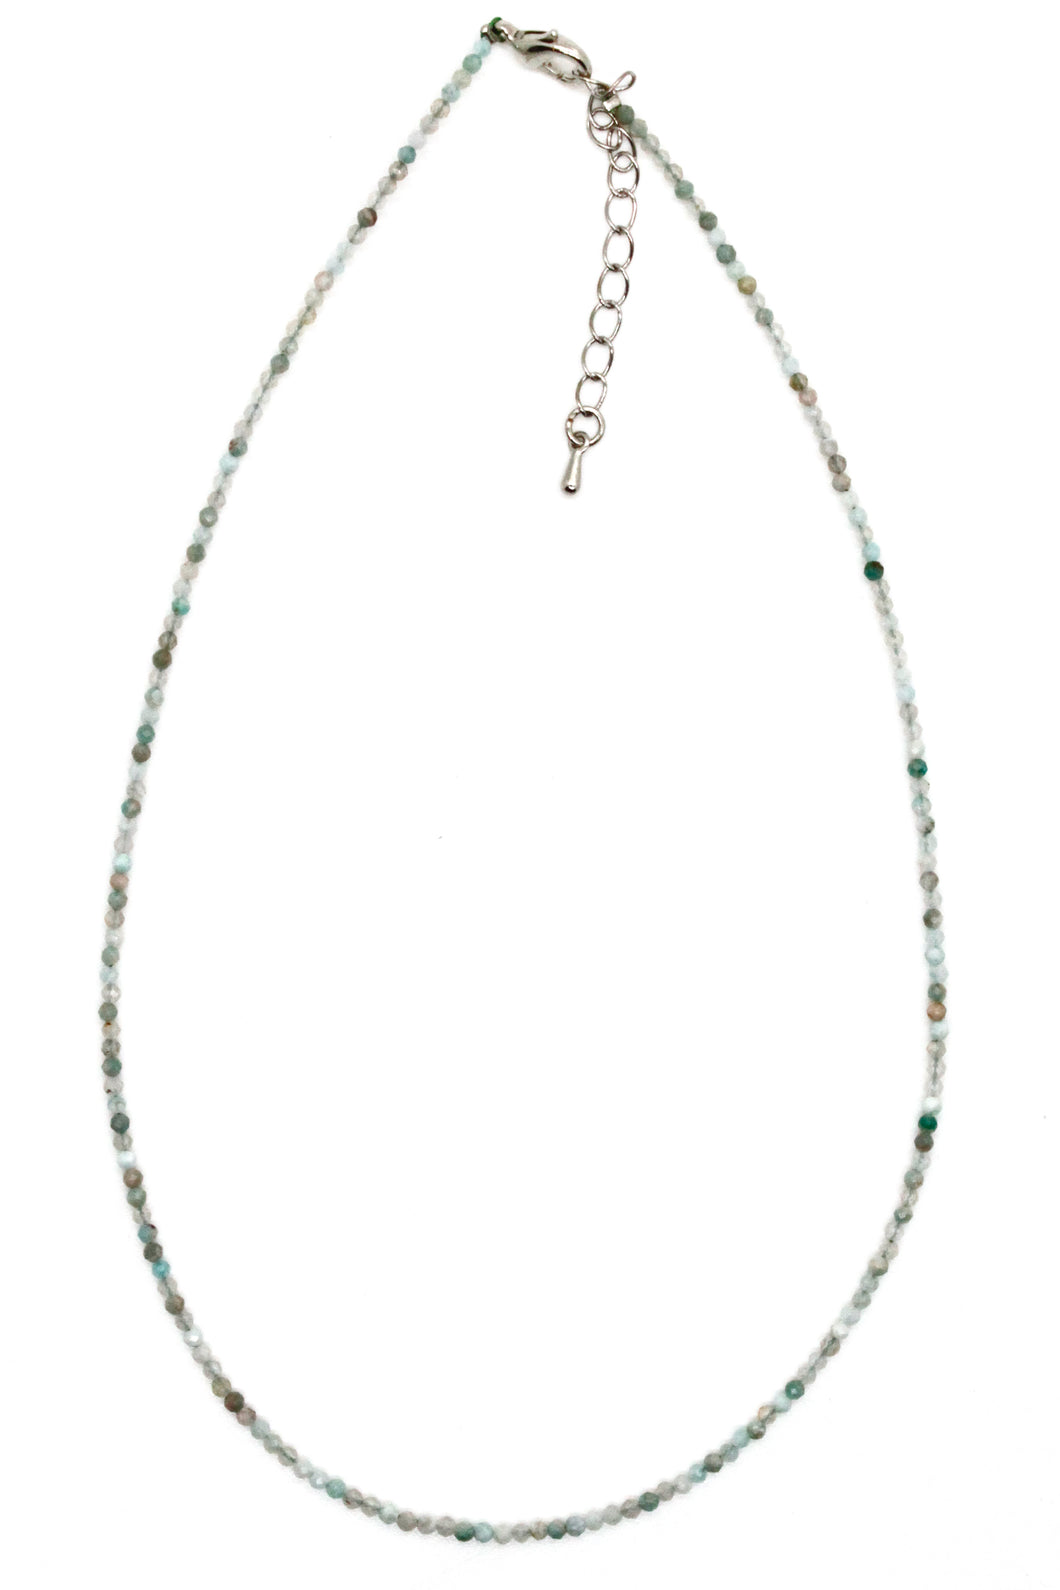 Mini Faceted Semi Precious Stone Necklace - NS-003